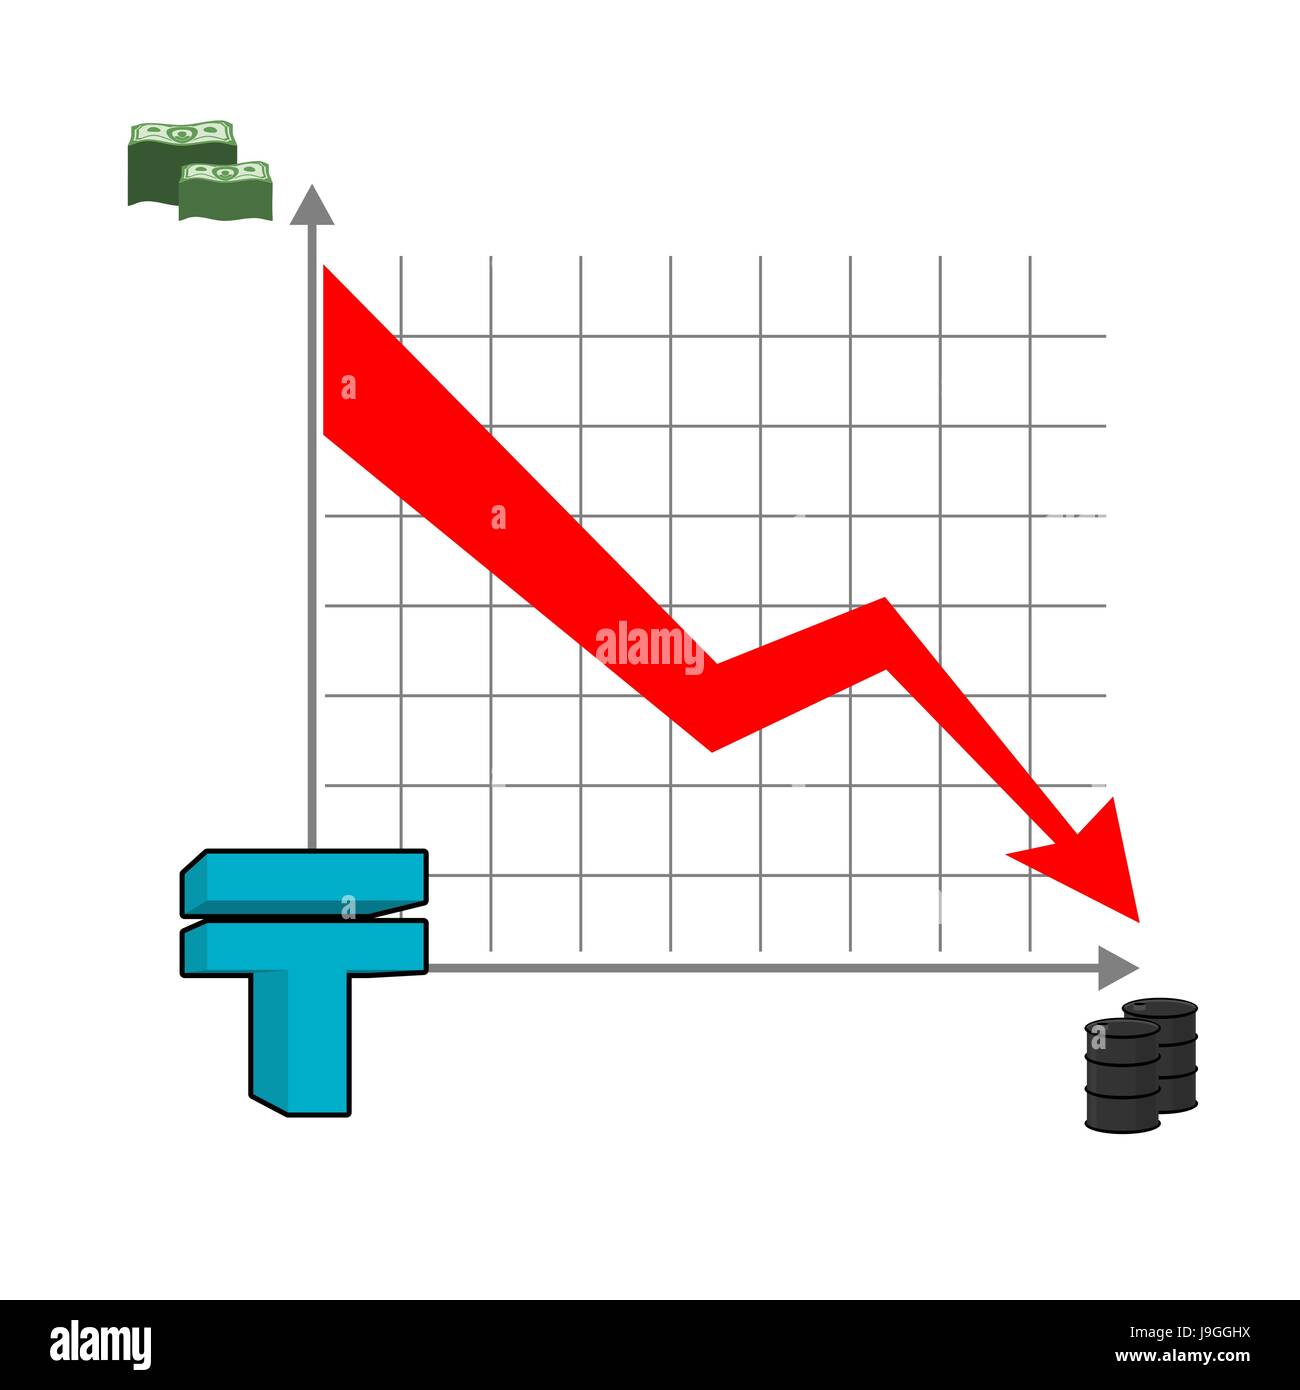 Il kazako tenge denaro cade. Caduta del tasso del tenge. Freccia rossa rivolta verso il basso. Riduzione dei costi dell'olio. Grafico della caduta della moneta nazionale in Kazakistan. Barili di o Illustrazione Vettoriale